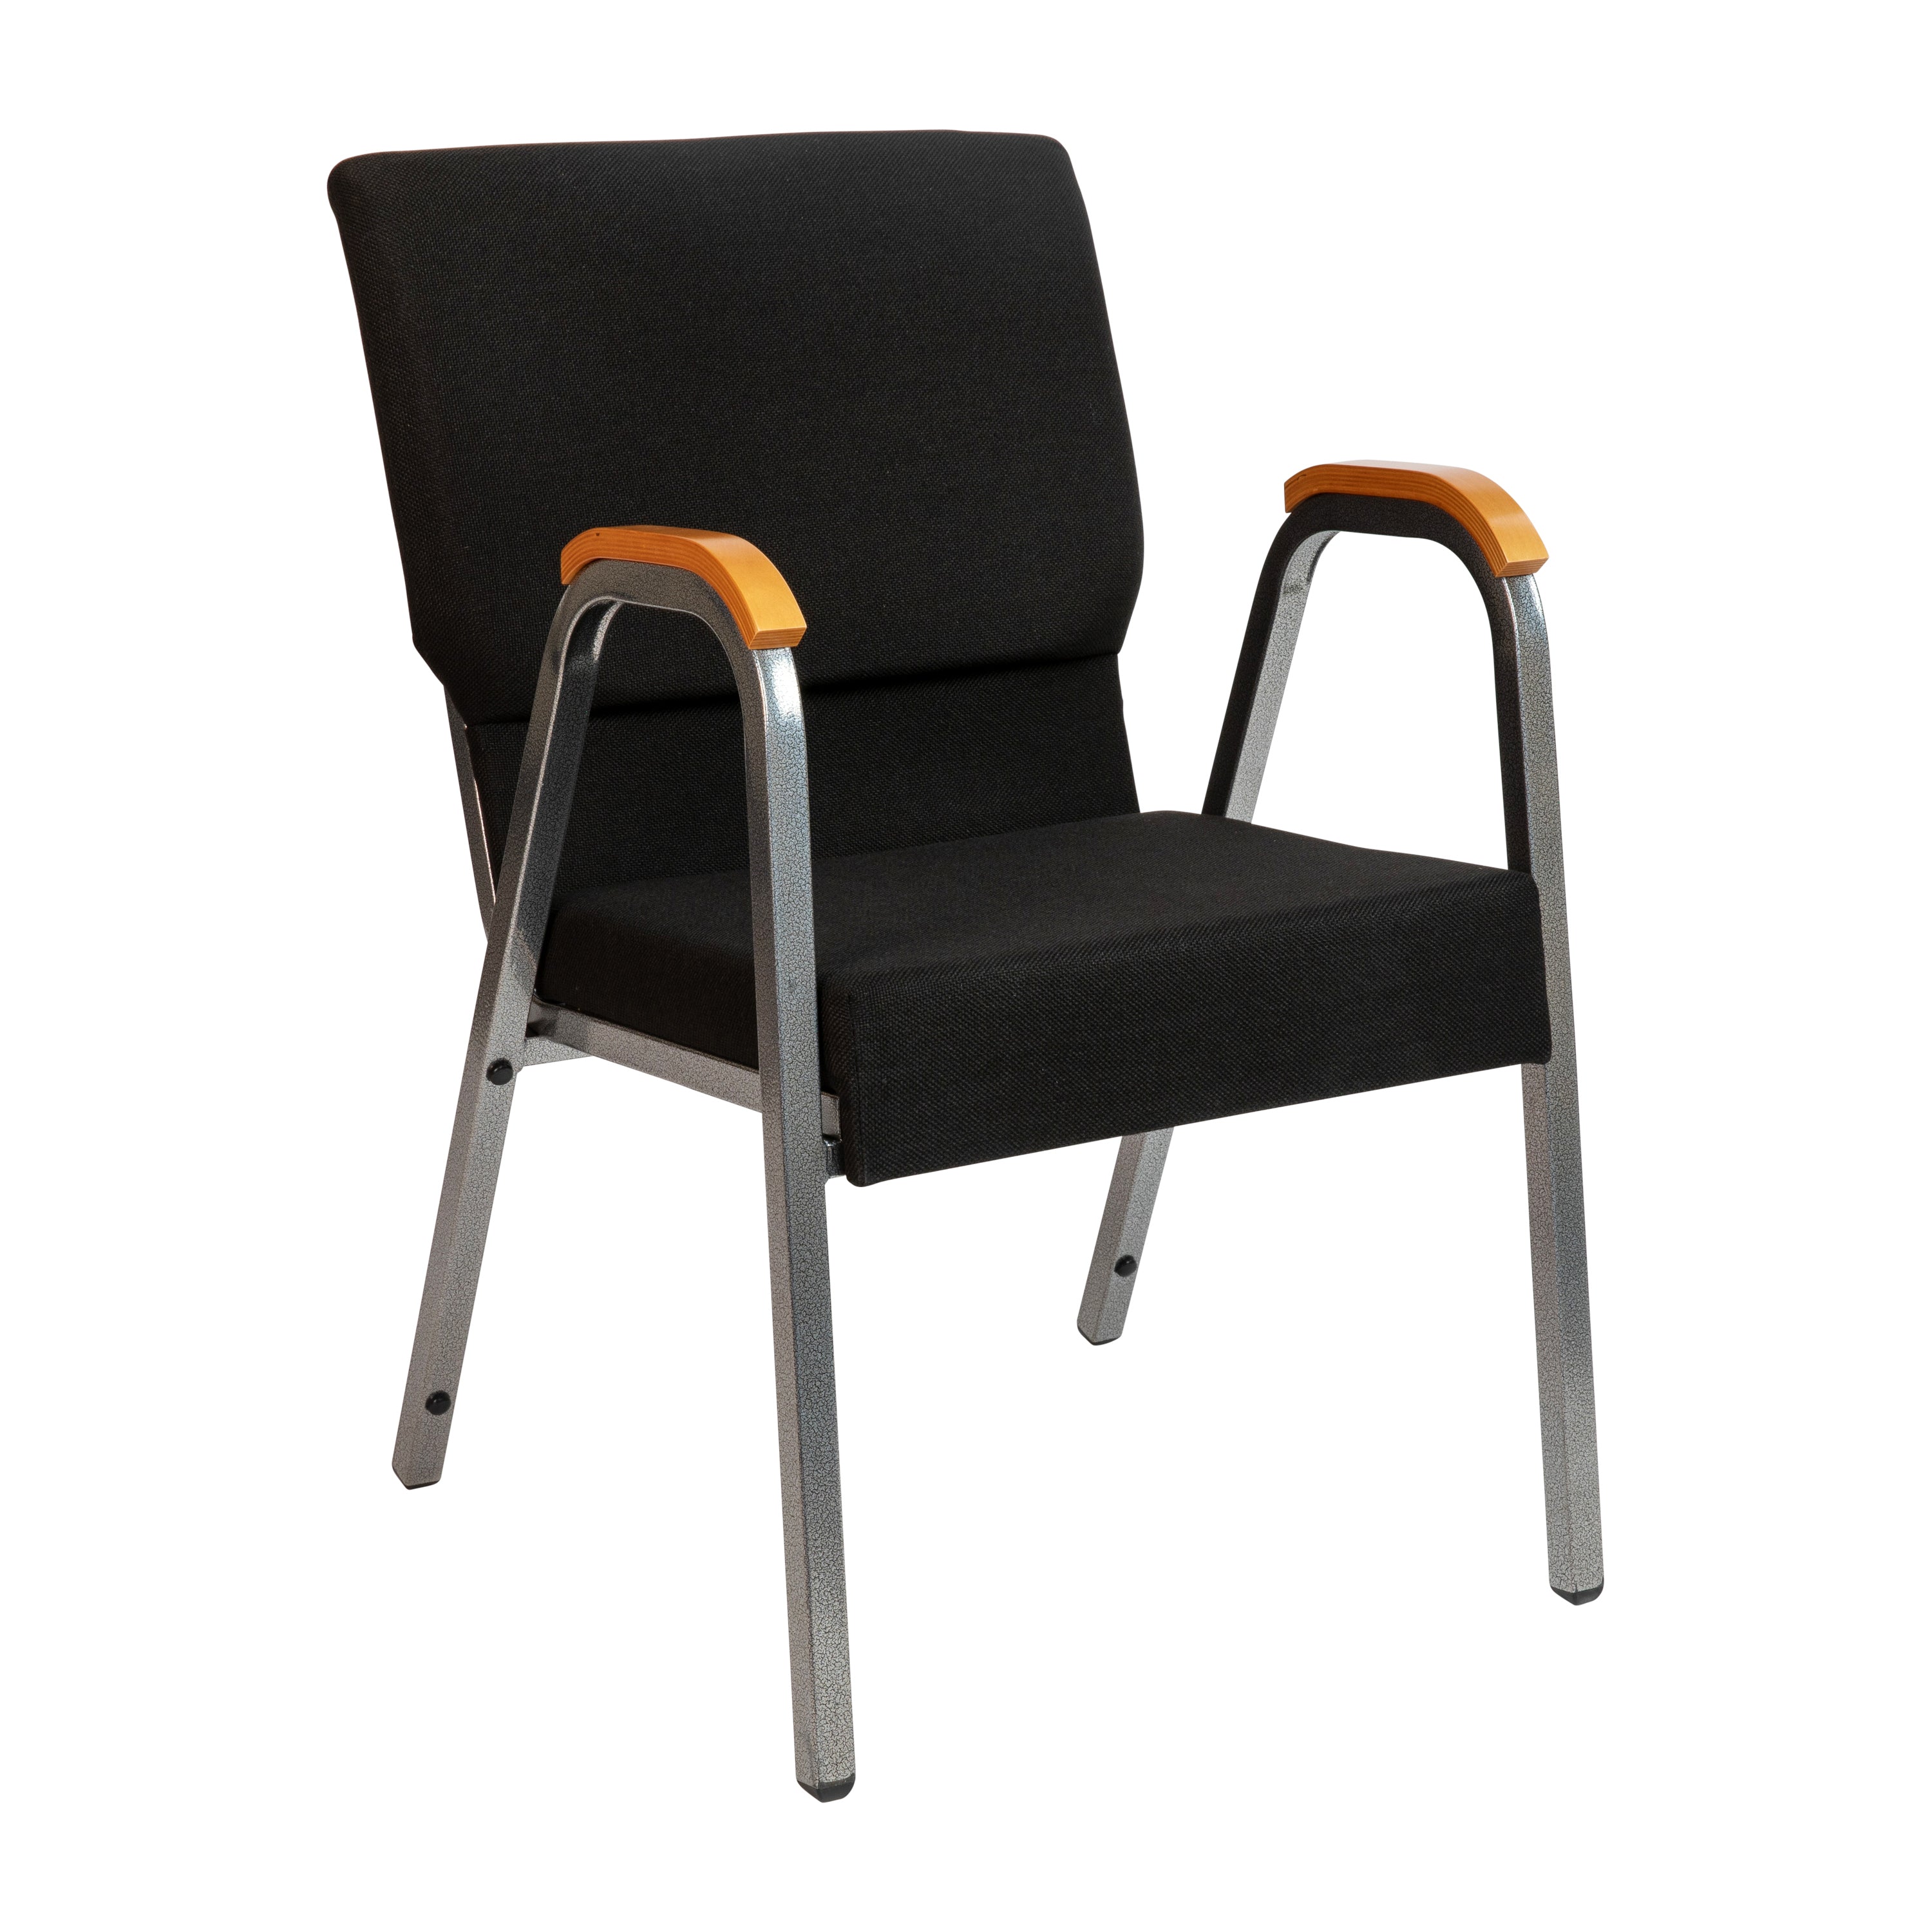 HERCULES Series 21"W Stacking Wood Accent Arm Church Chair-Church Chair-Flash Furniture-Wall2Wall Furnishings